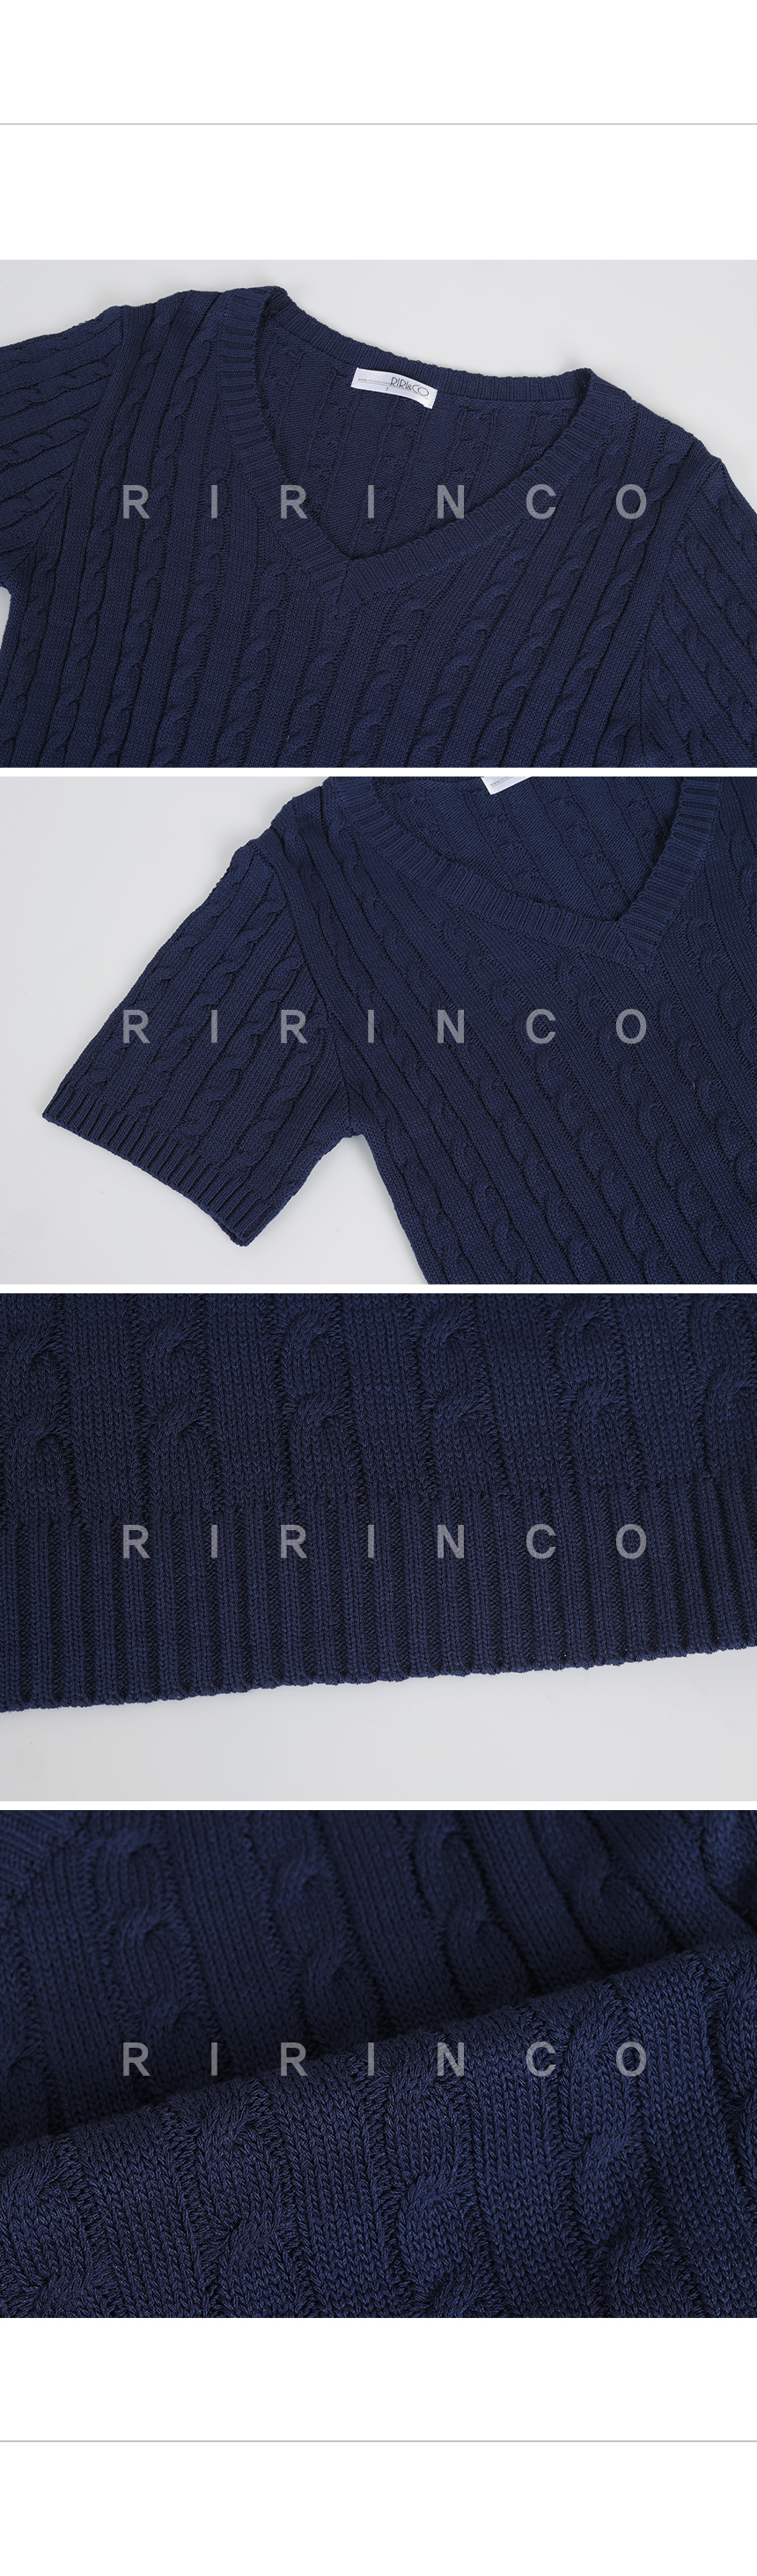 RIRINCO ツイスト編みセミクロップド半袖ニット